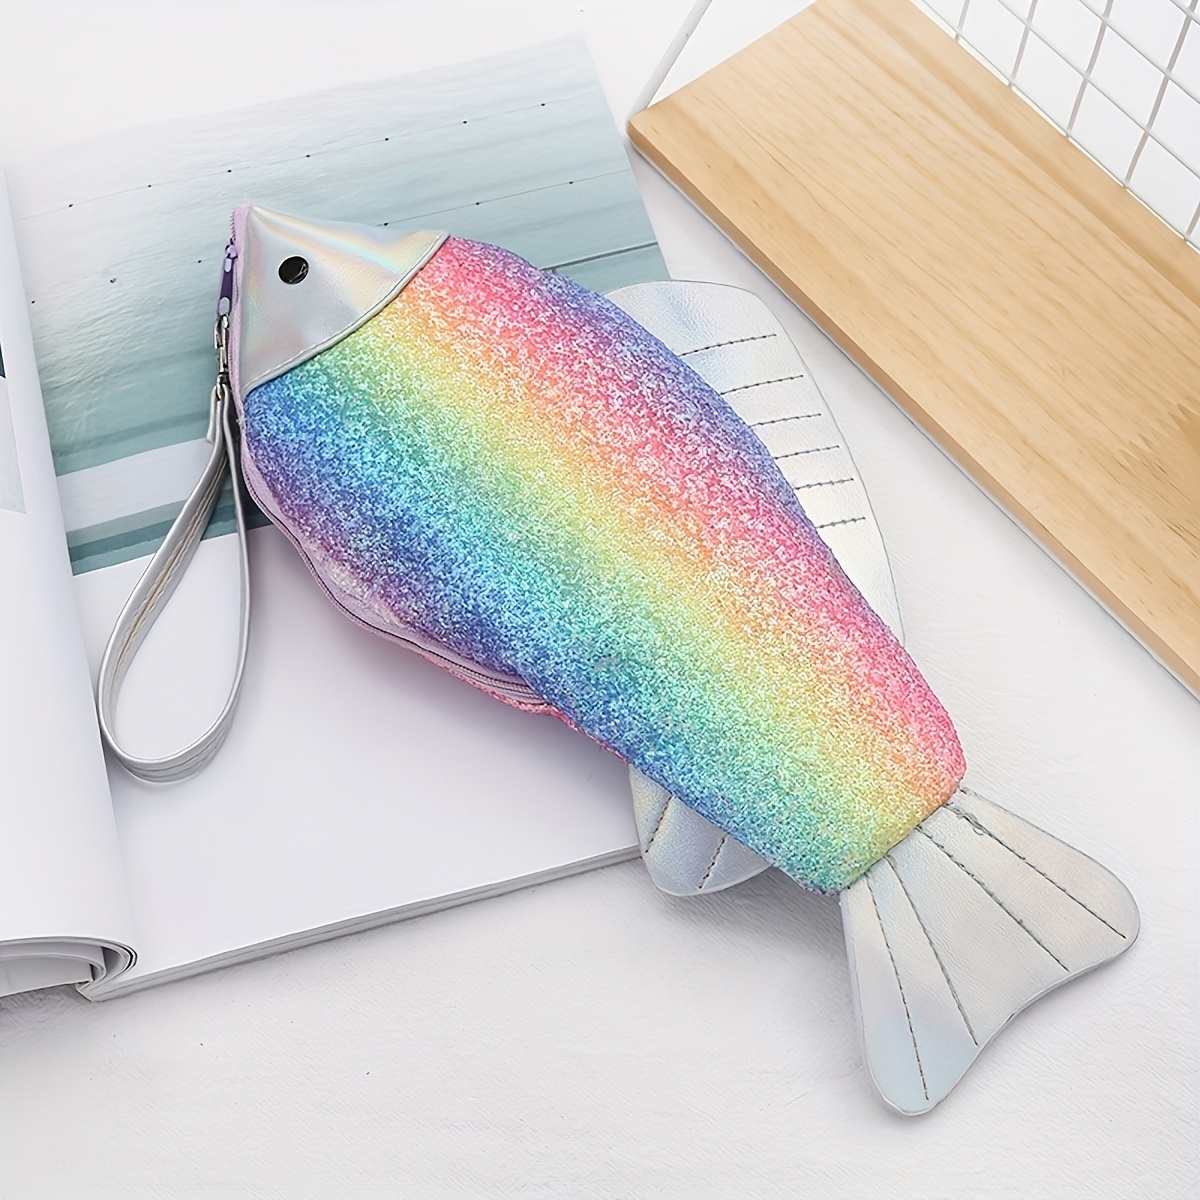 Carp Pen Bag Realistic Fish Shape Make-up Pouch Pen Pencil Case With Zipper  